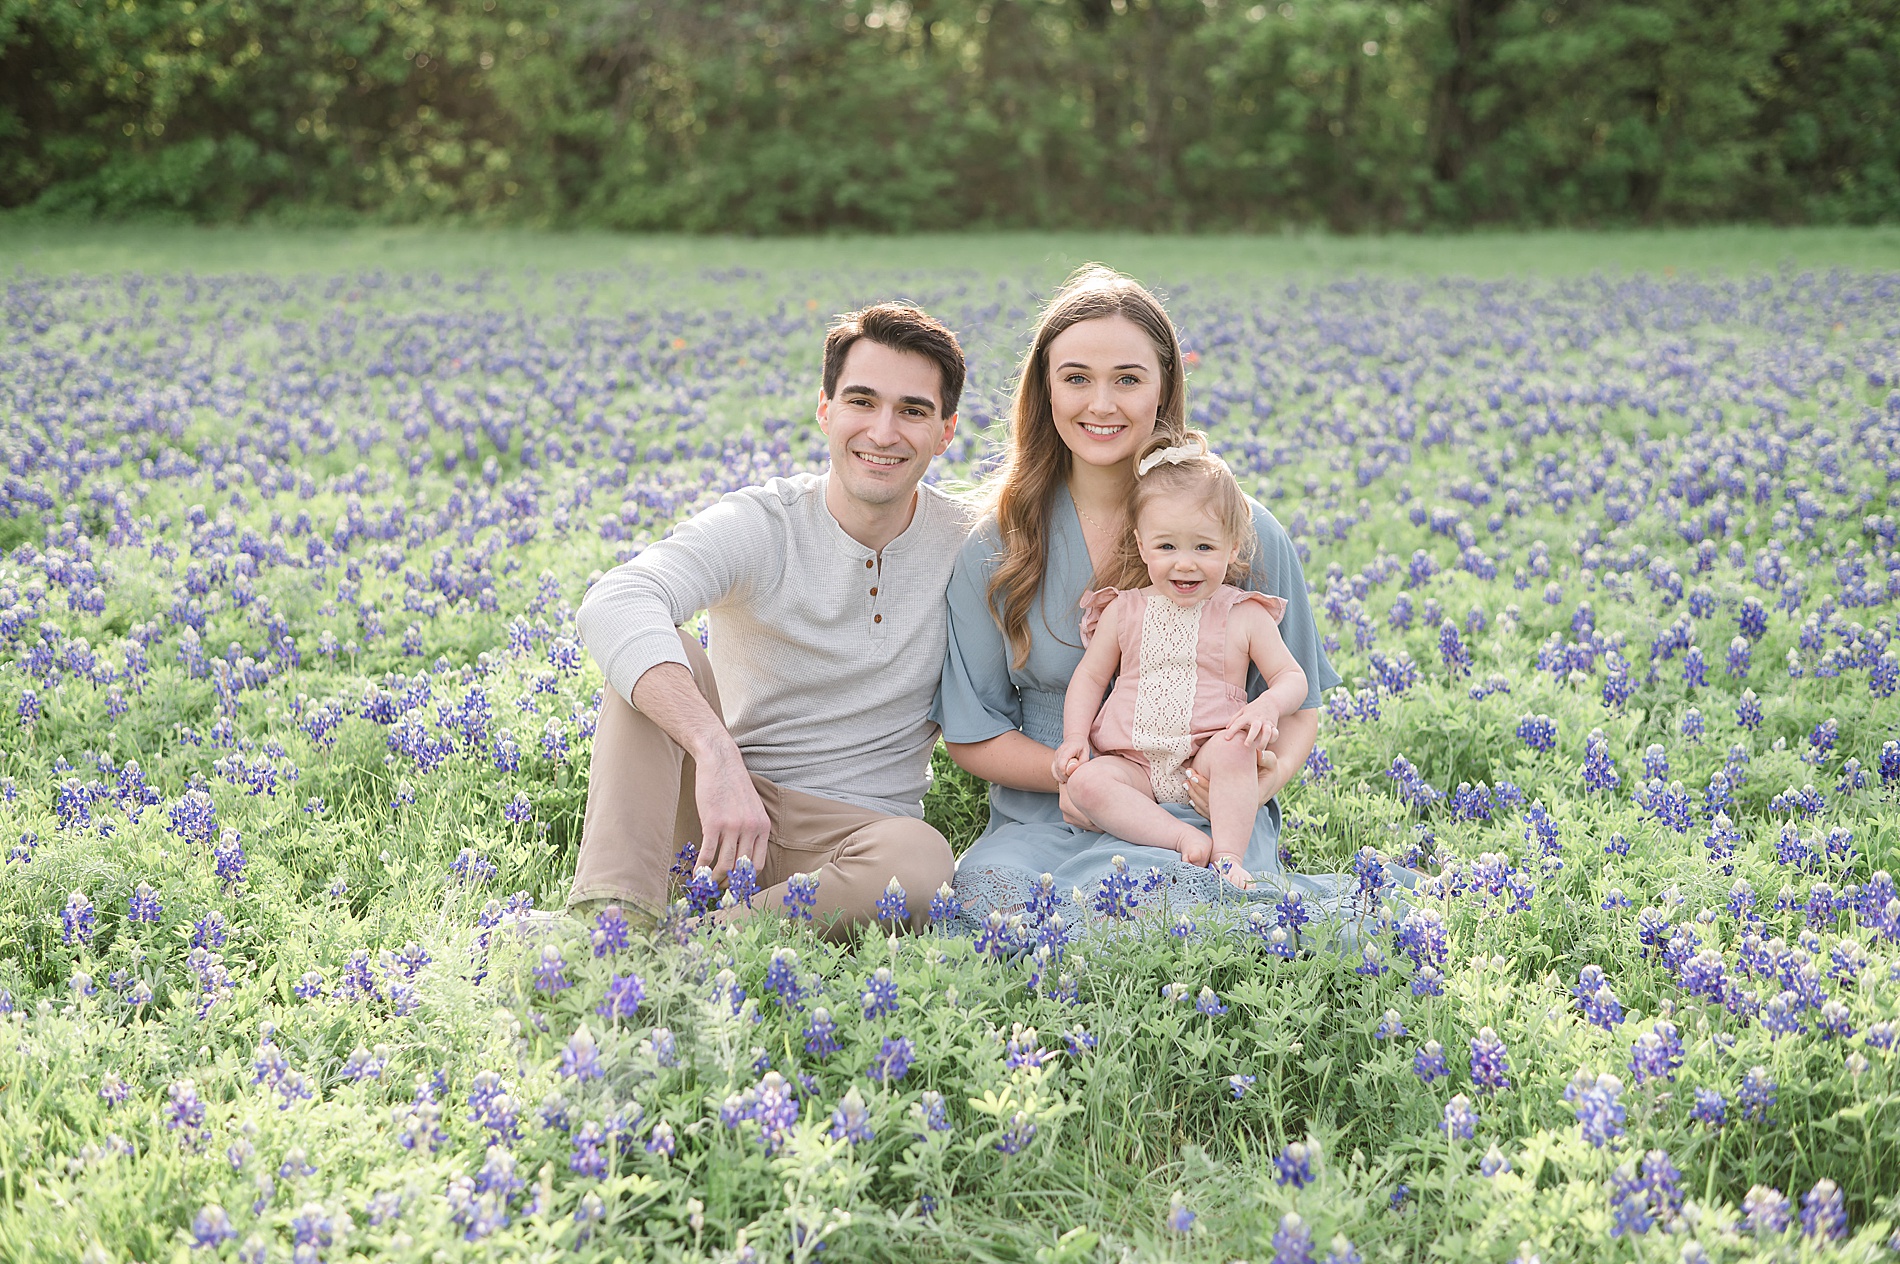 Dallas Texas Bluebonnet Photos taken by Lindsey Dutton Photography, a Dallas family photographer